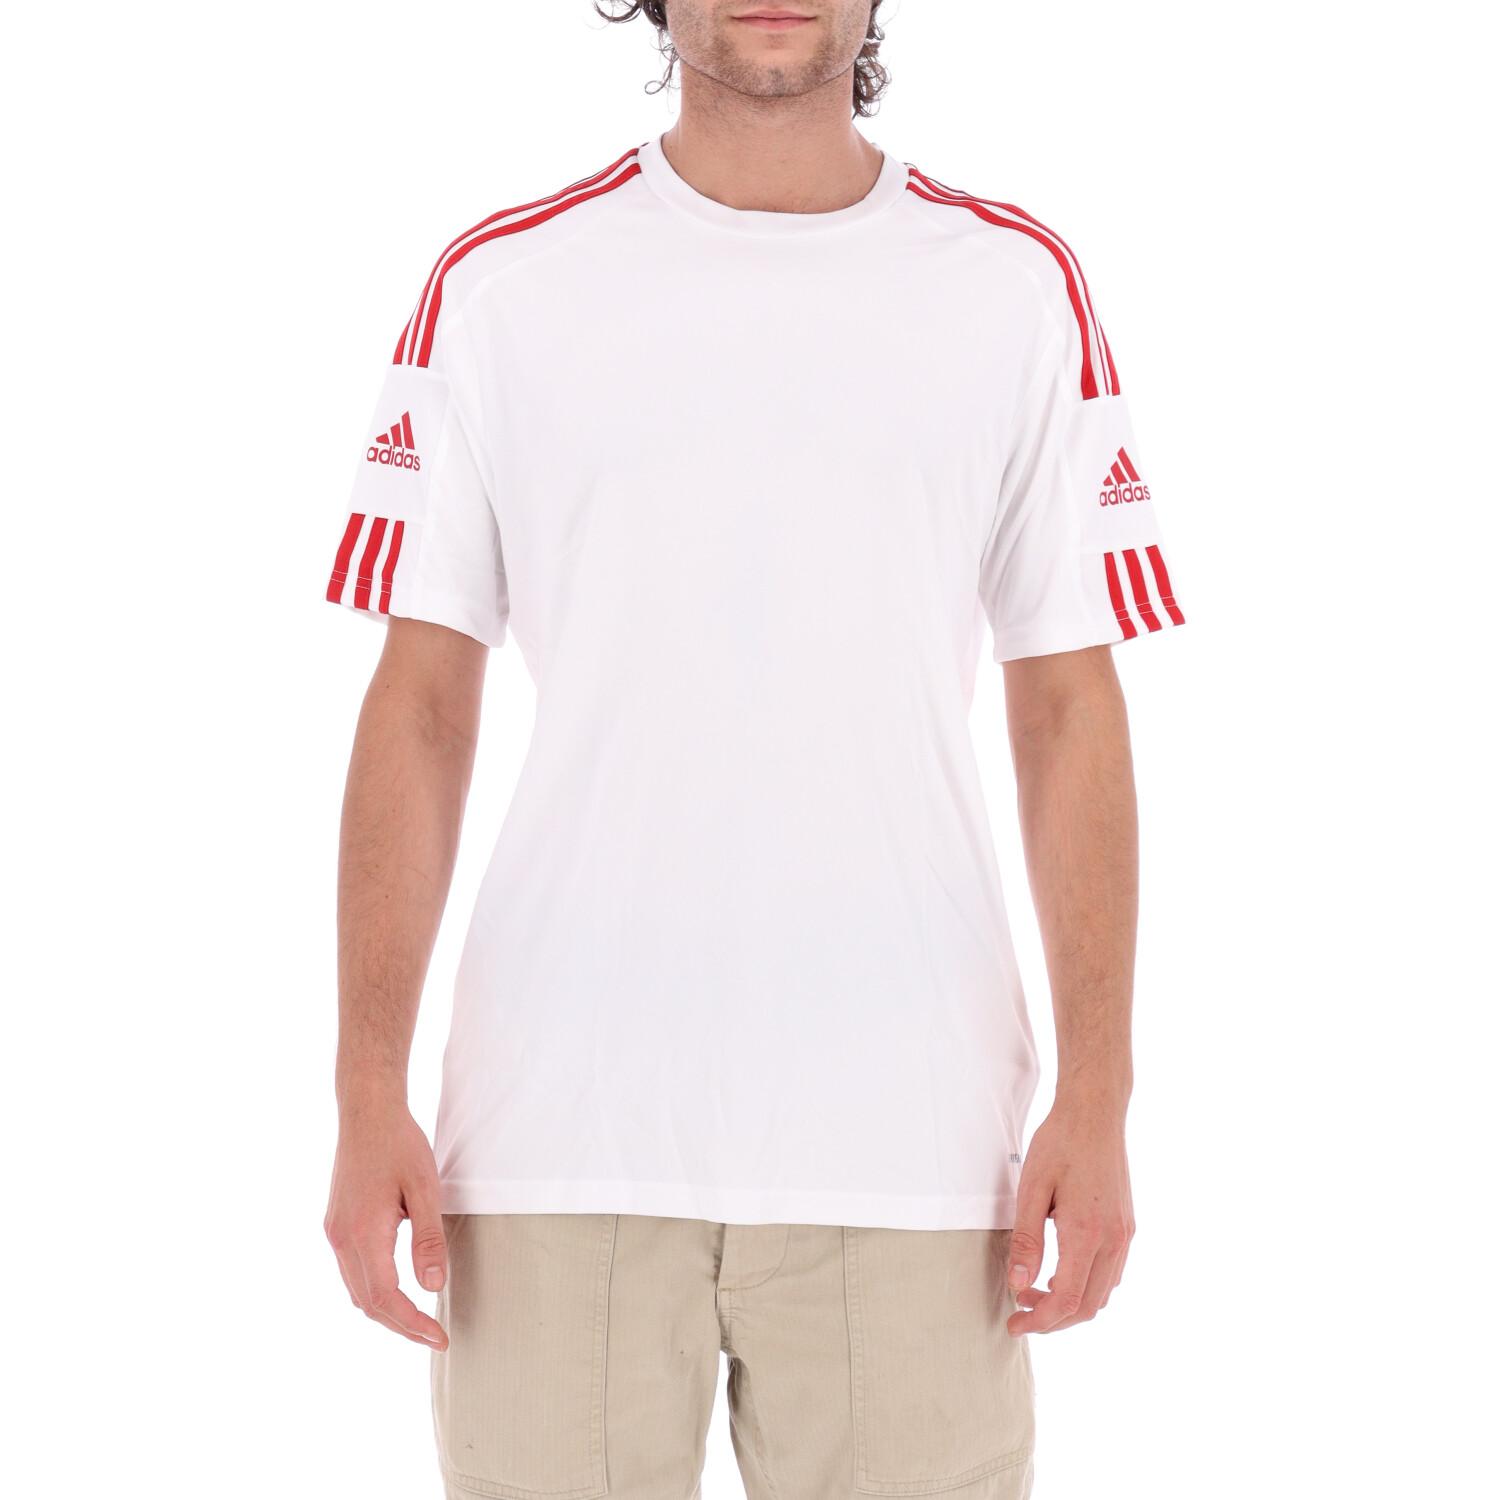 Adidas T-shirt Adidas Squadra 21 WHITE RED 